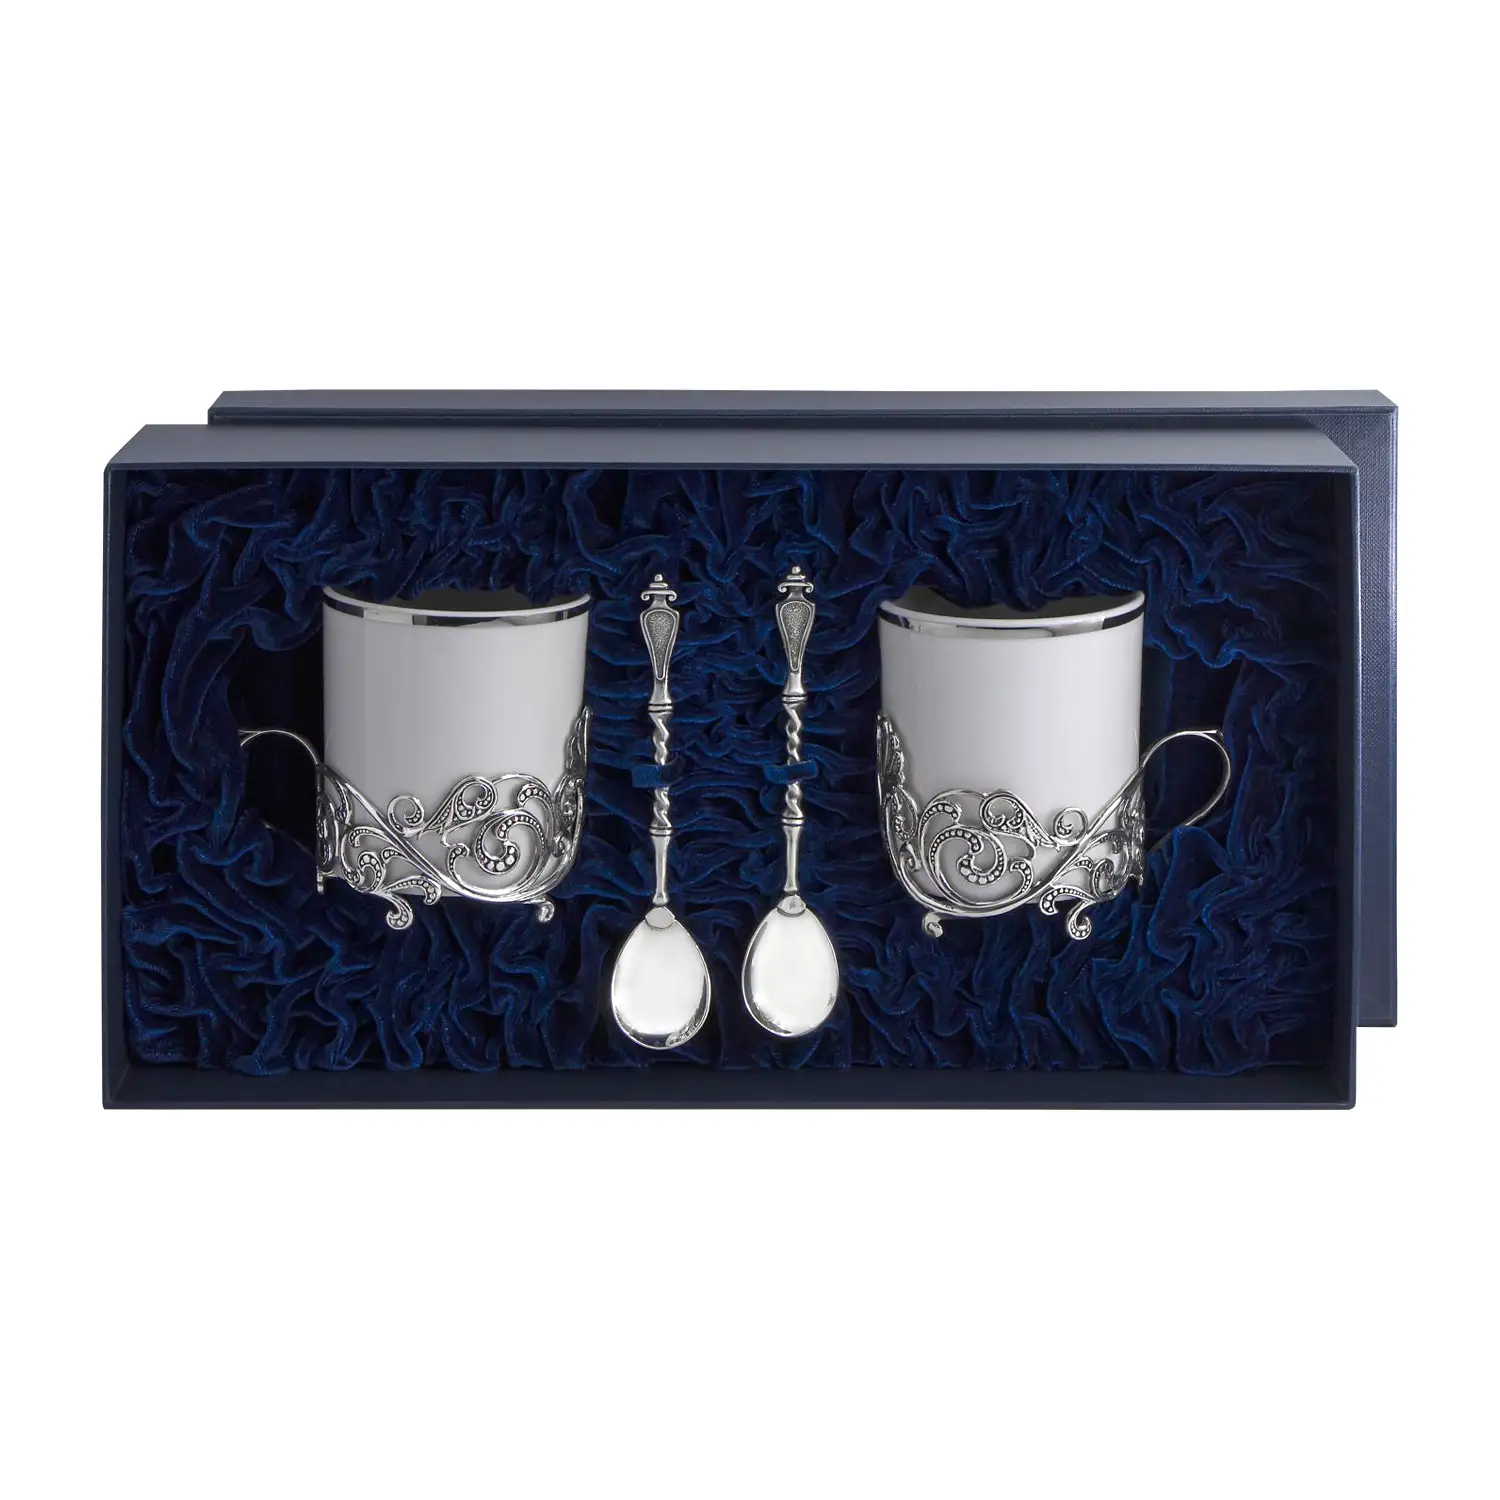 Набор чайных чашек Витая: ложка, чашка (Серебро 925) набор чайных чашек симфония ложка чашка серебро 925